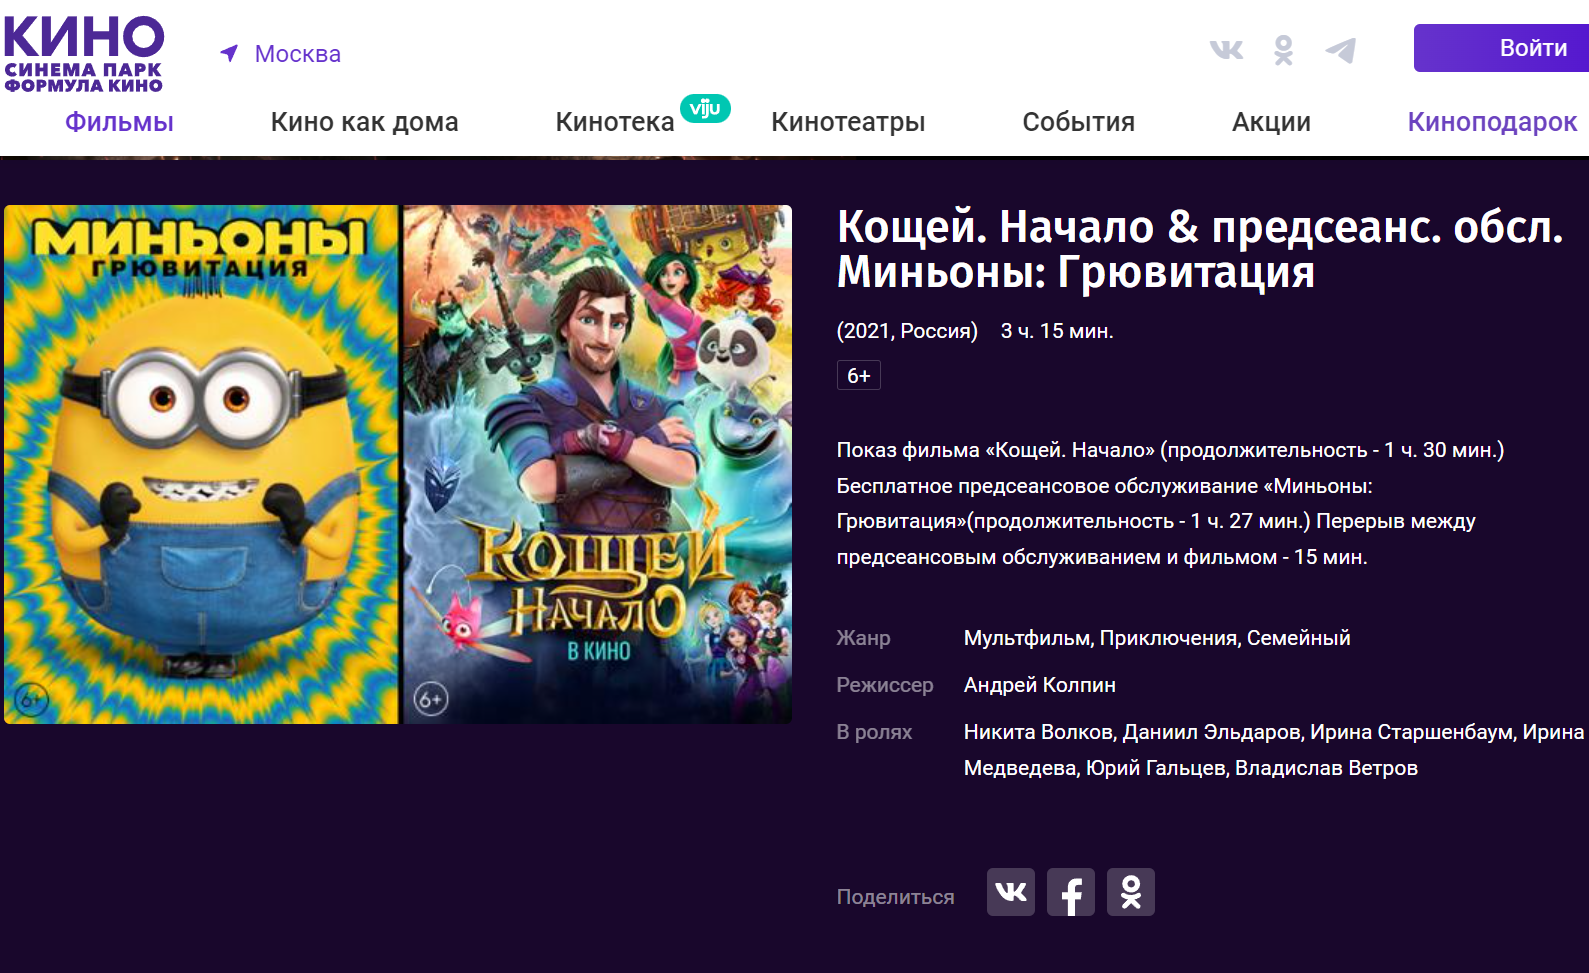 Афиша первого «кинопродукта». Скриншот с сайта Kinoteatr.ru